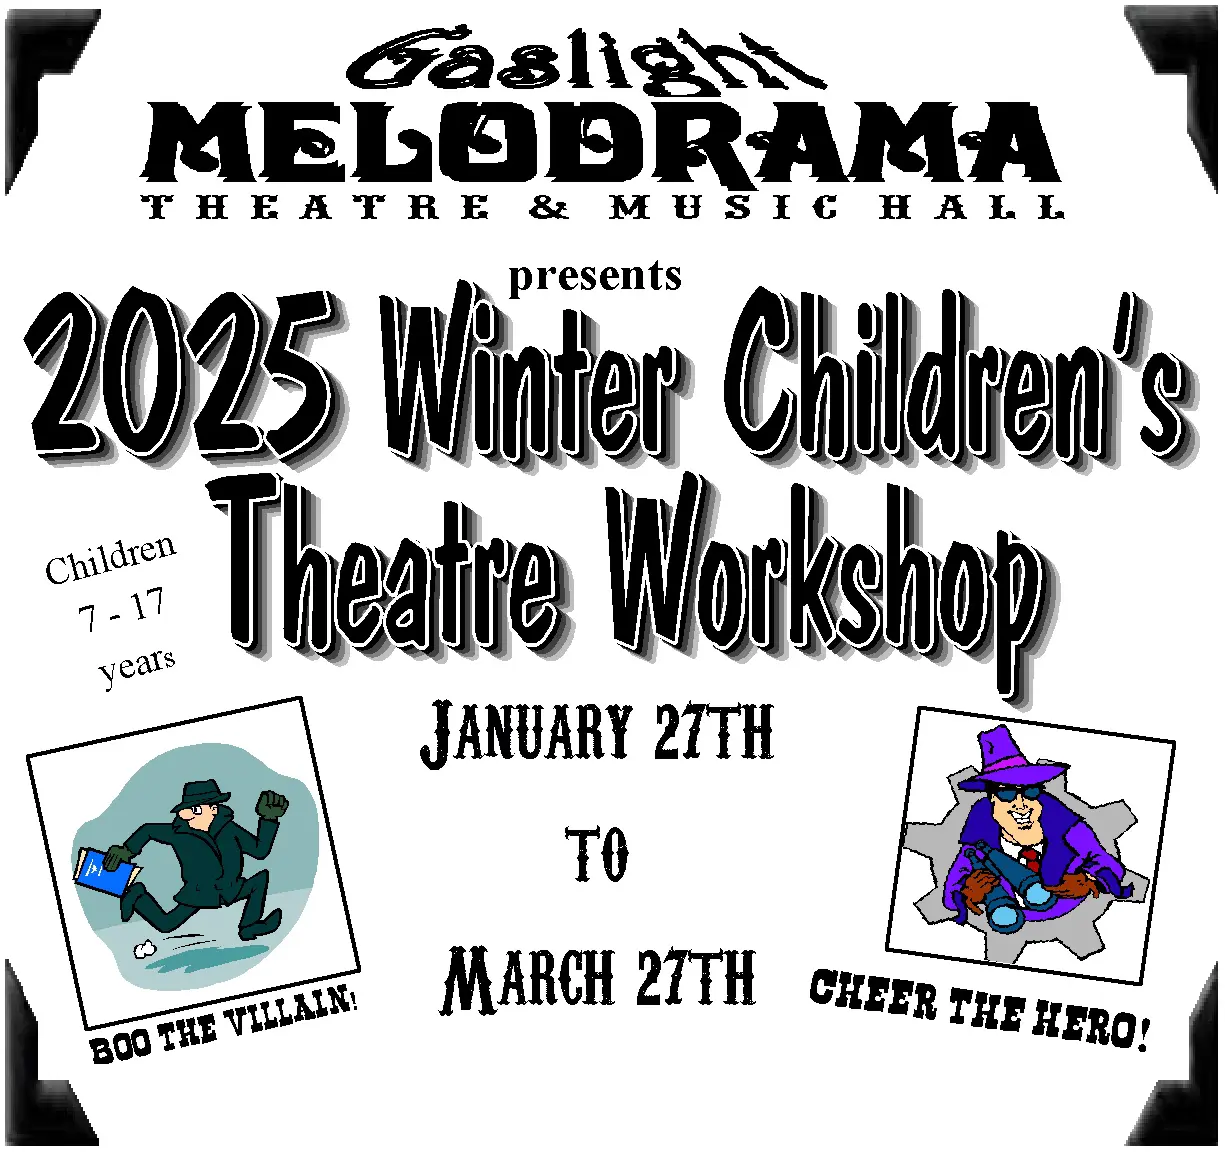 2025 Winter Children's Theatre Workshop